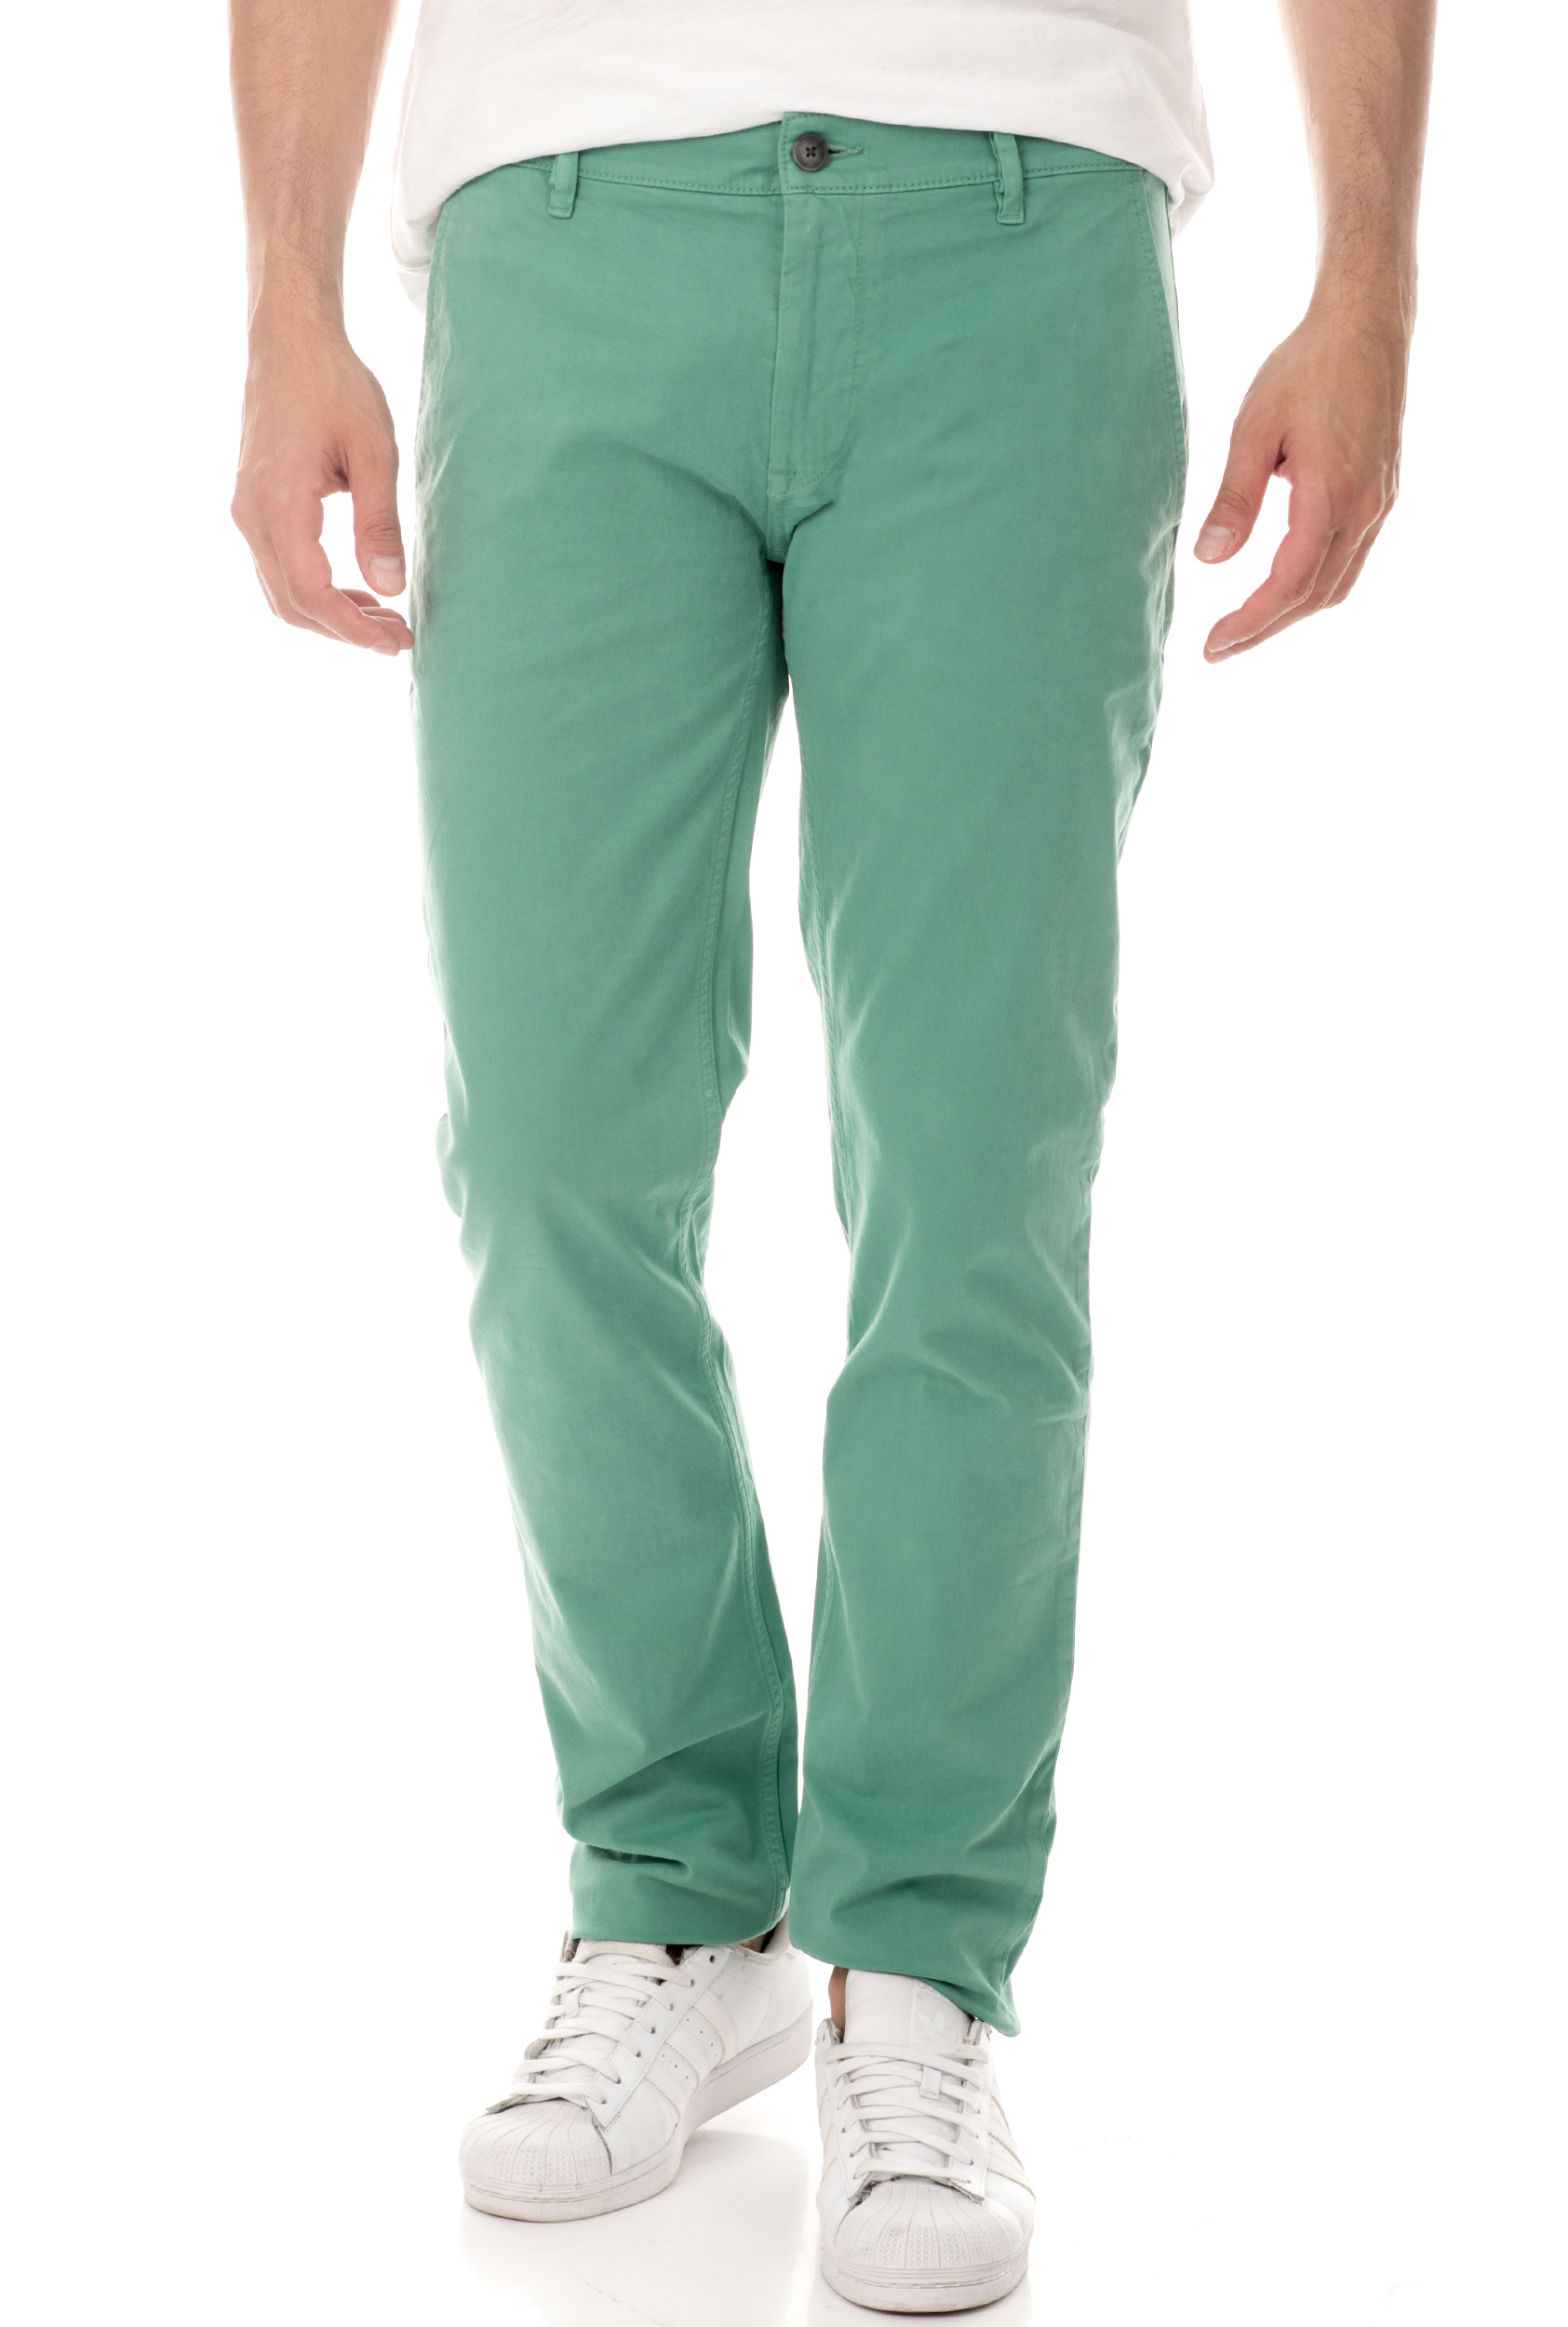 Ανδρικά/Ρούχα/Παντελόνια/Chinos BOSS - Ανδρικό chino παντελόνι BOSS Schino-Slim πράσινο